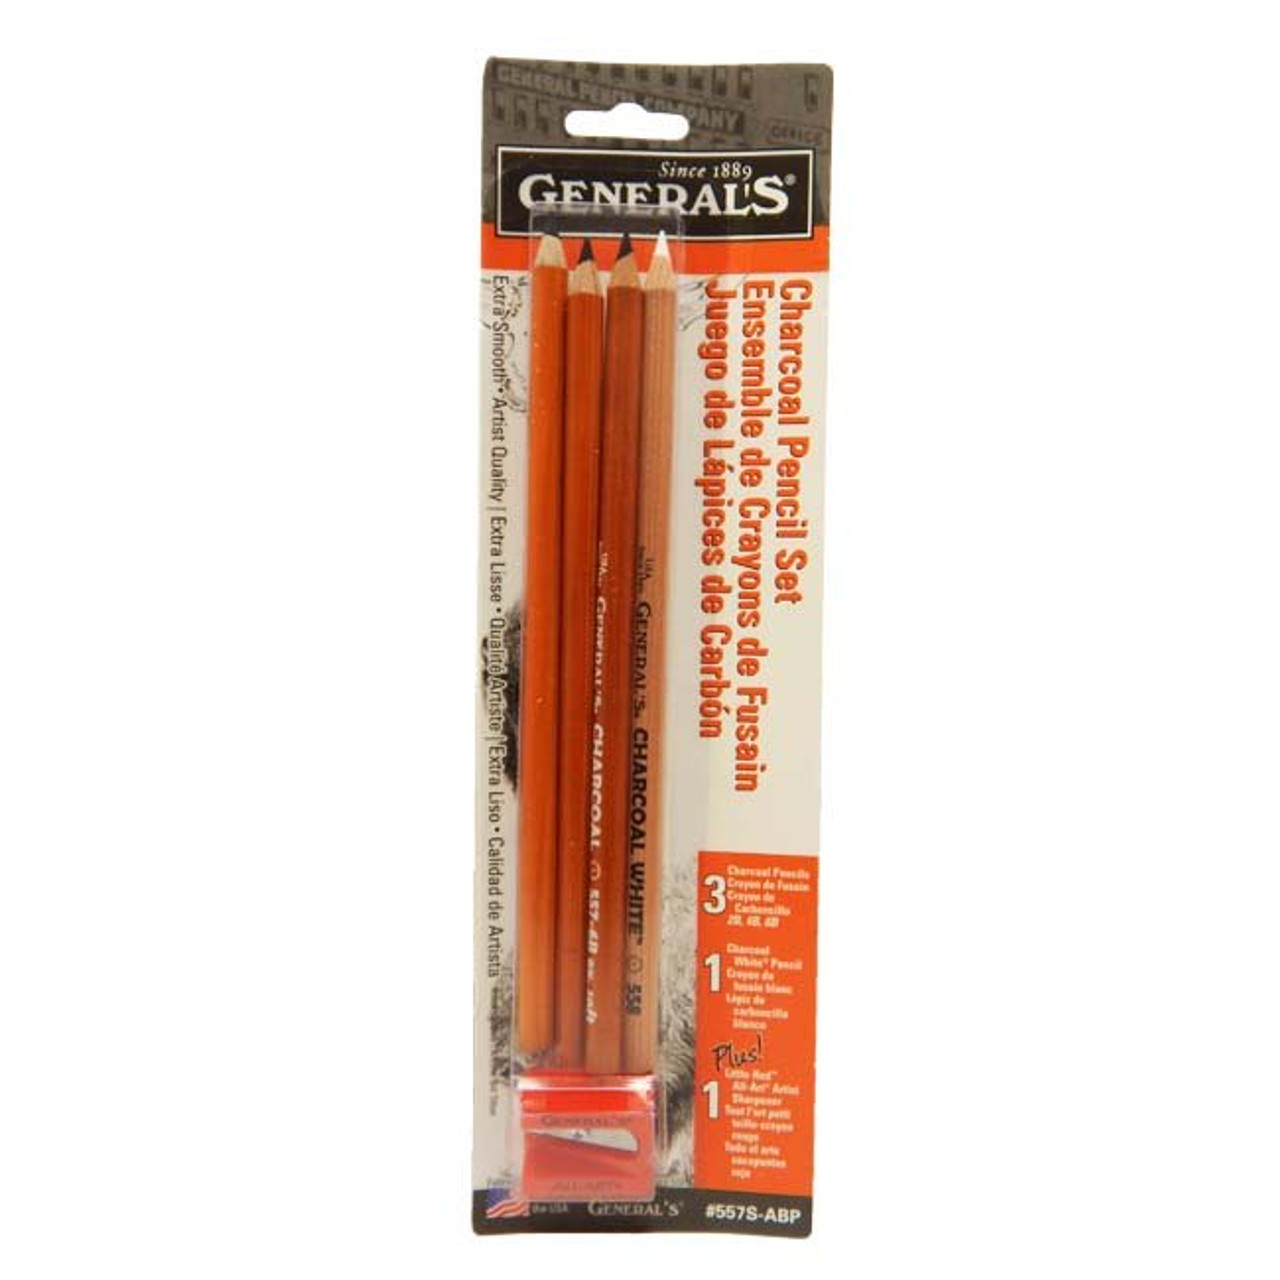 General Pencil Drawing & Sketching Pencil Kit No. 20